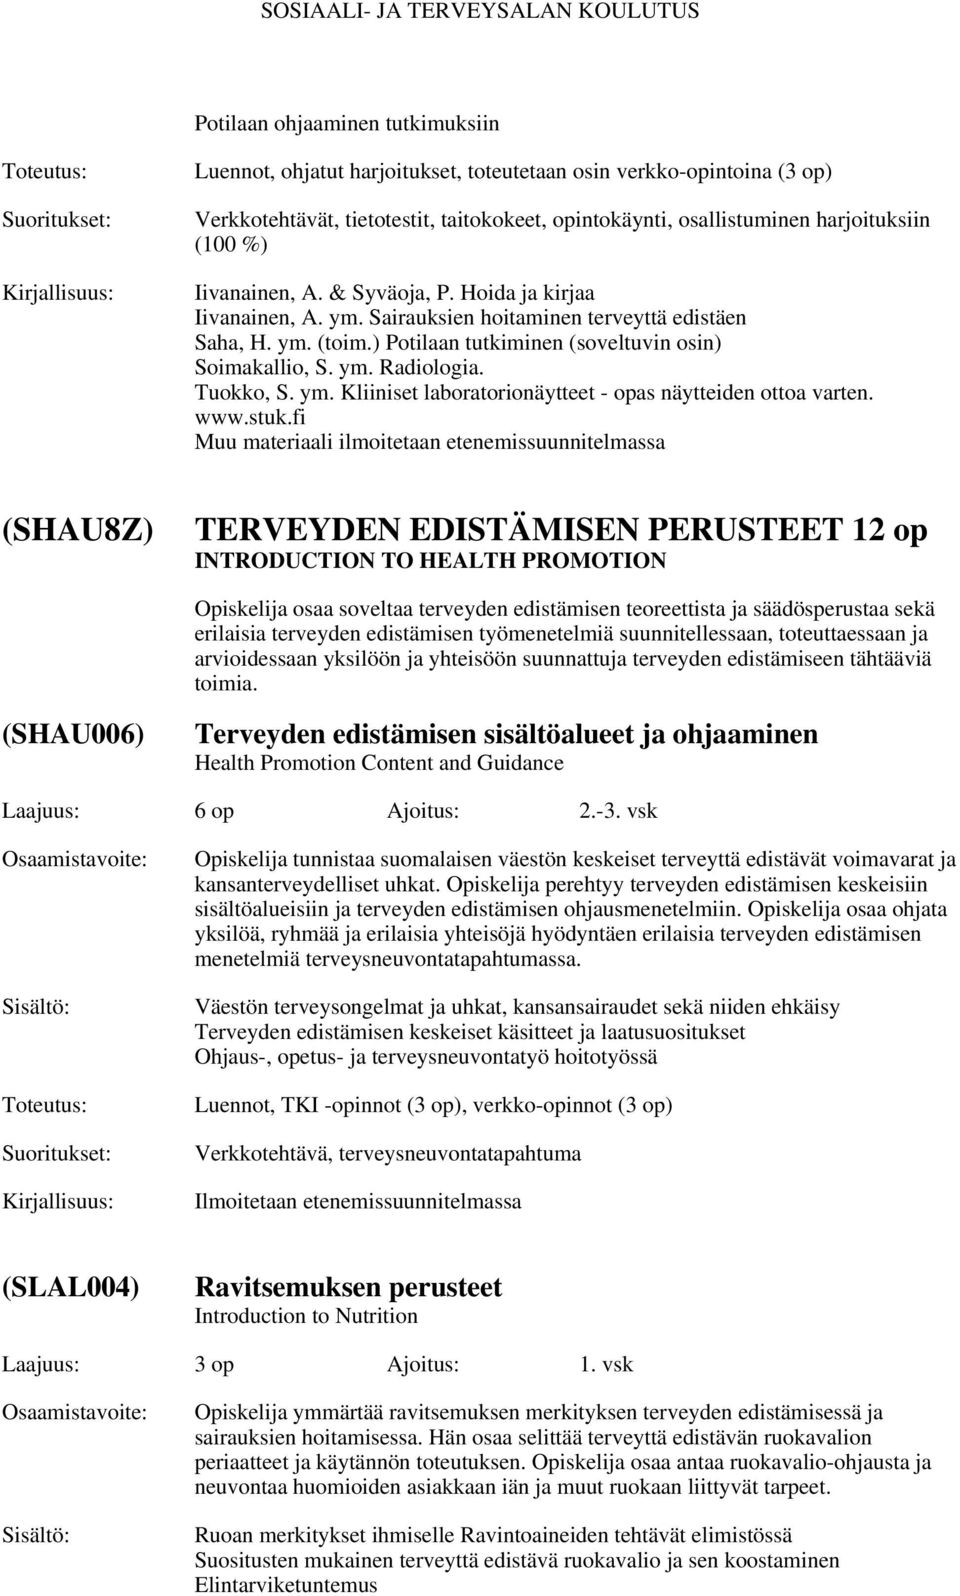 Tuokko, S. ym. Kliiniset laboratorionäytteet - opas näytteiden ottoa varten. www.stuk.